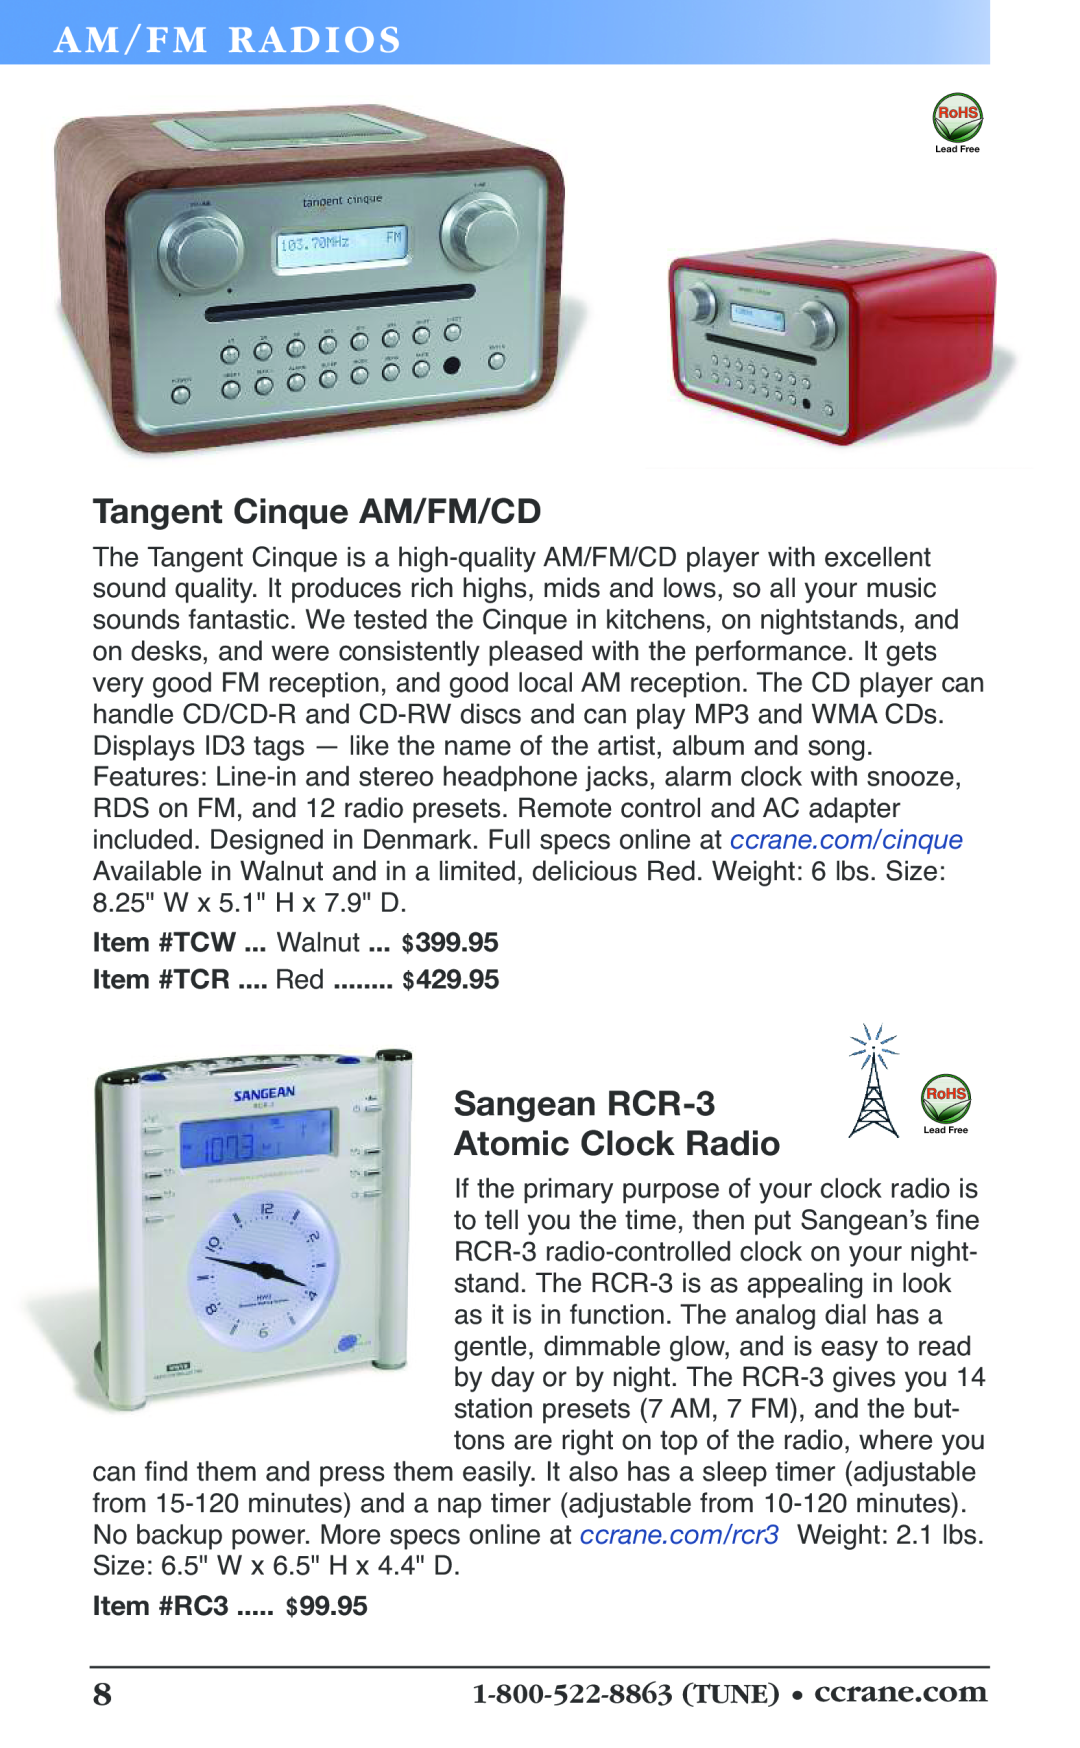 C. Crane 19f Tangent Cinque AM/FM/CD, Sangean RCR-3 Atomic Clock Radio, Am/F M Radi Os, Item #TCW ... Red ... $399.95 